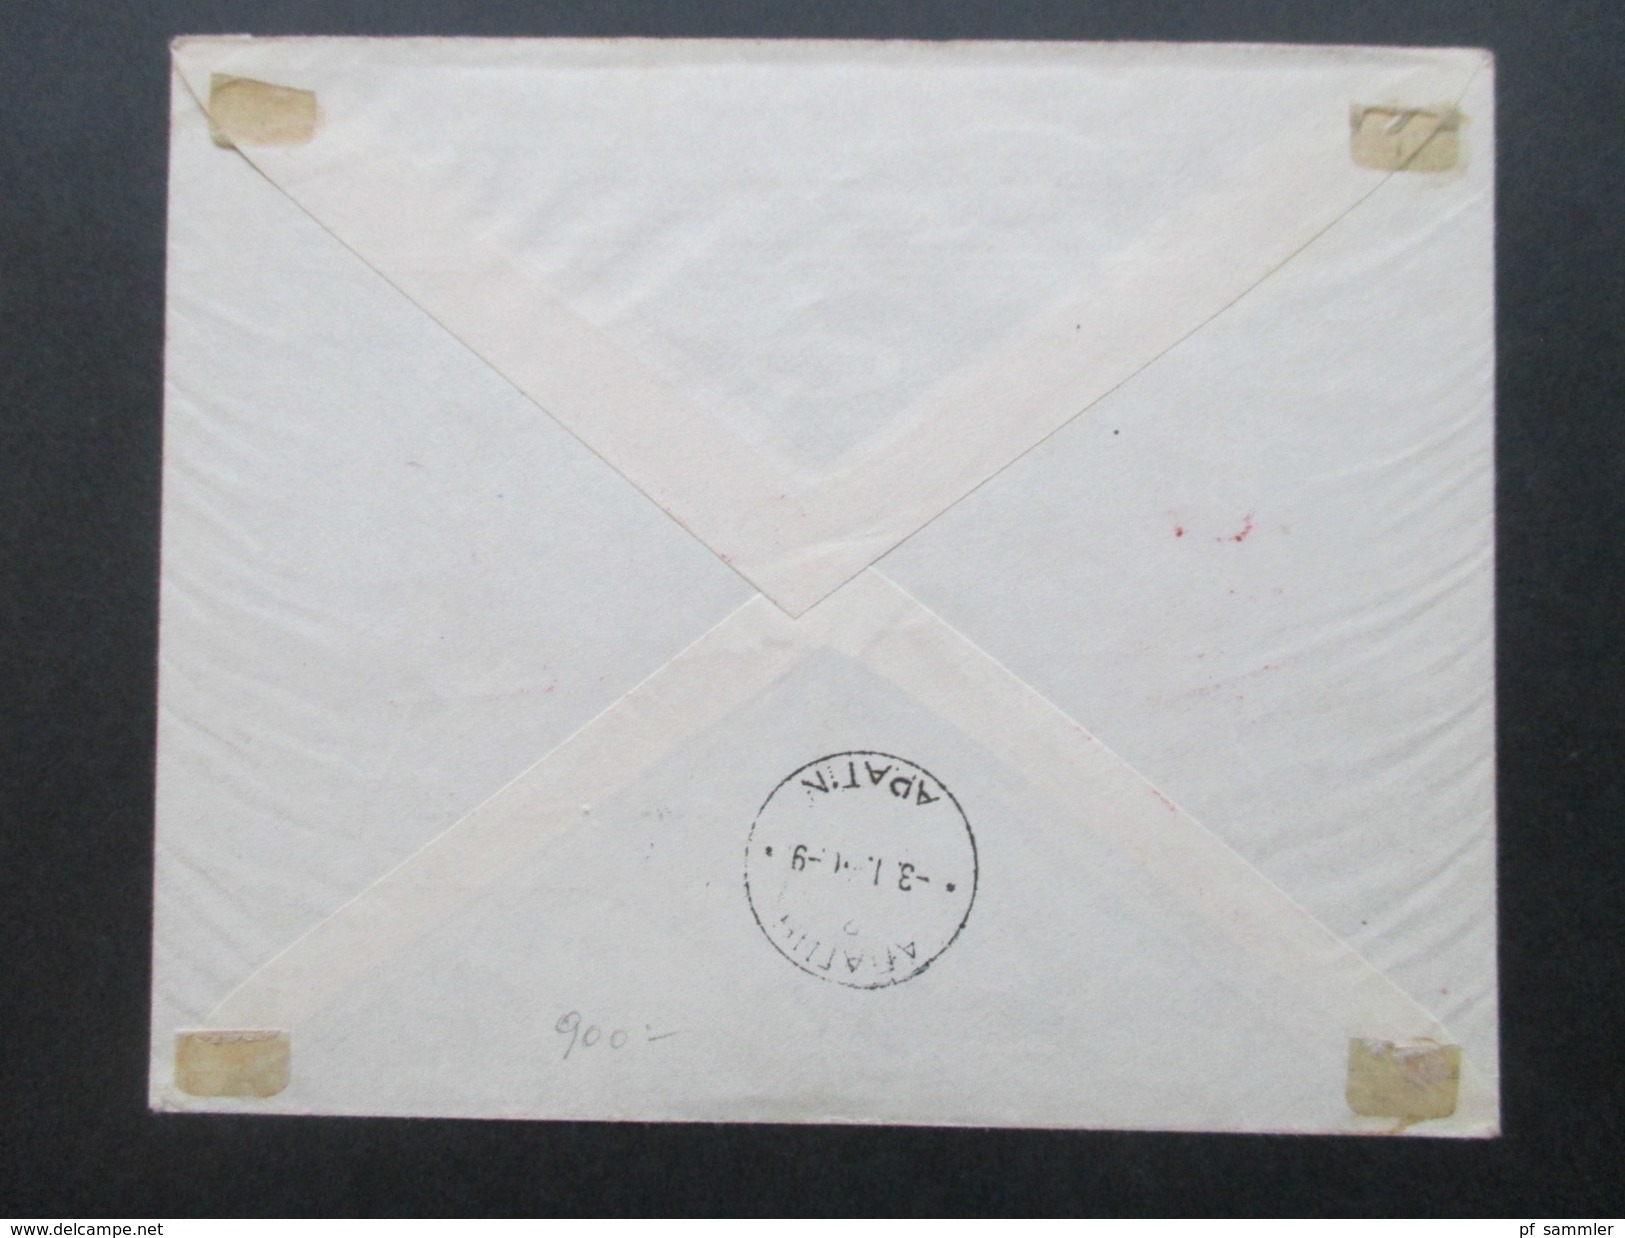 Jugoslawien Königreich 1940 Post Und Telegraphenbeamte Nr. 408 - 412 FDC / Einschreiben Mit Rotem Sonderstempel!! - Lettres & Documents